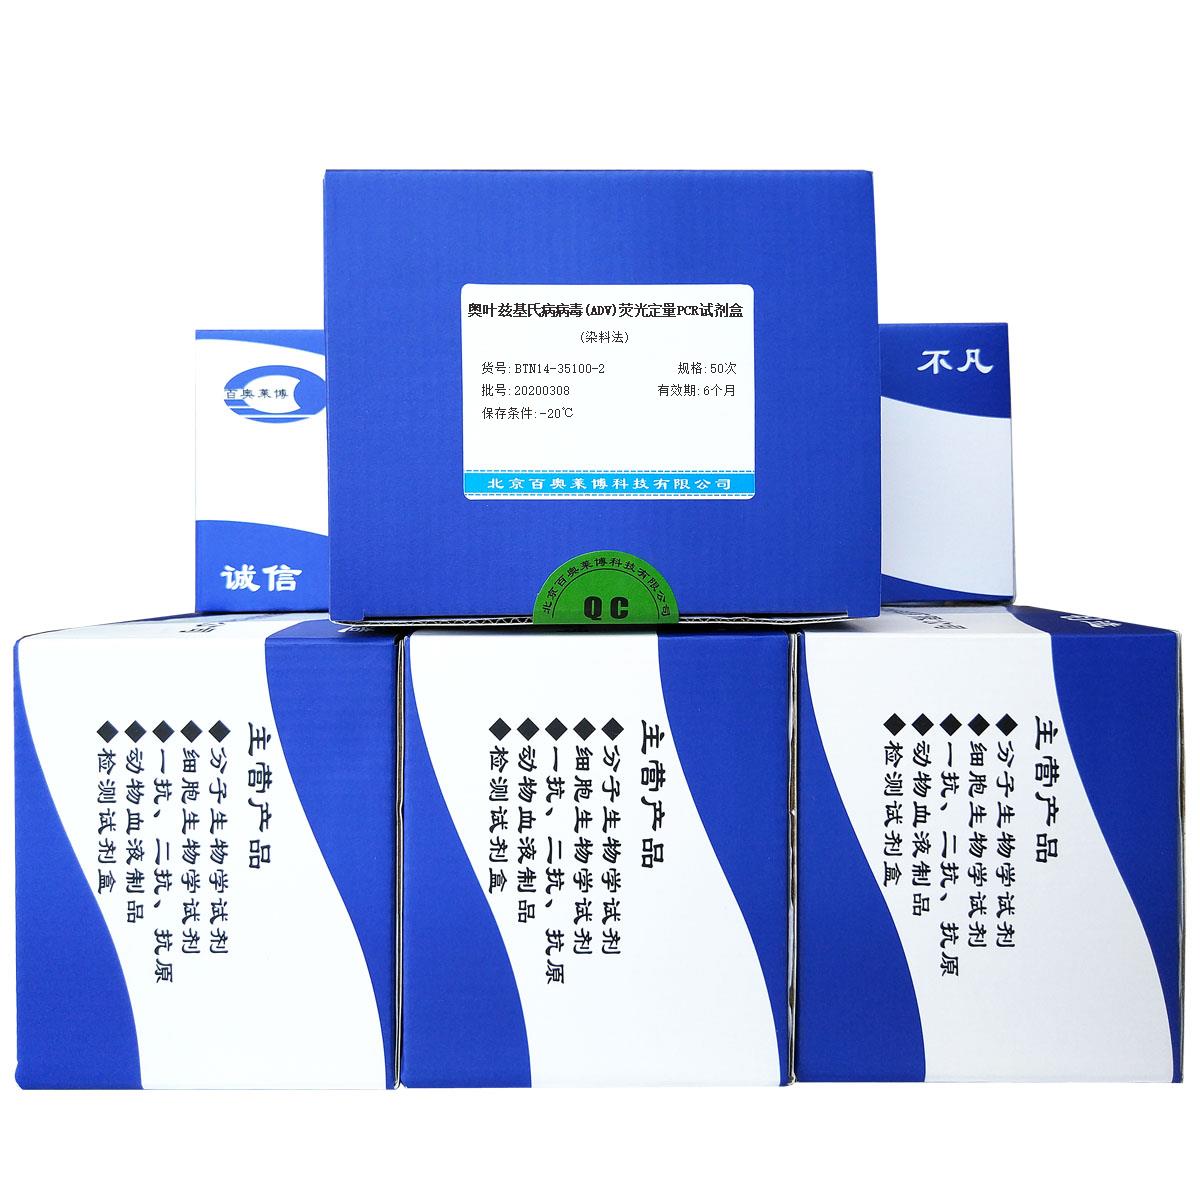 奥叶兹基氏病病毒(ADV)荧光定量PCR试剂盒(染料法)